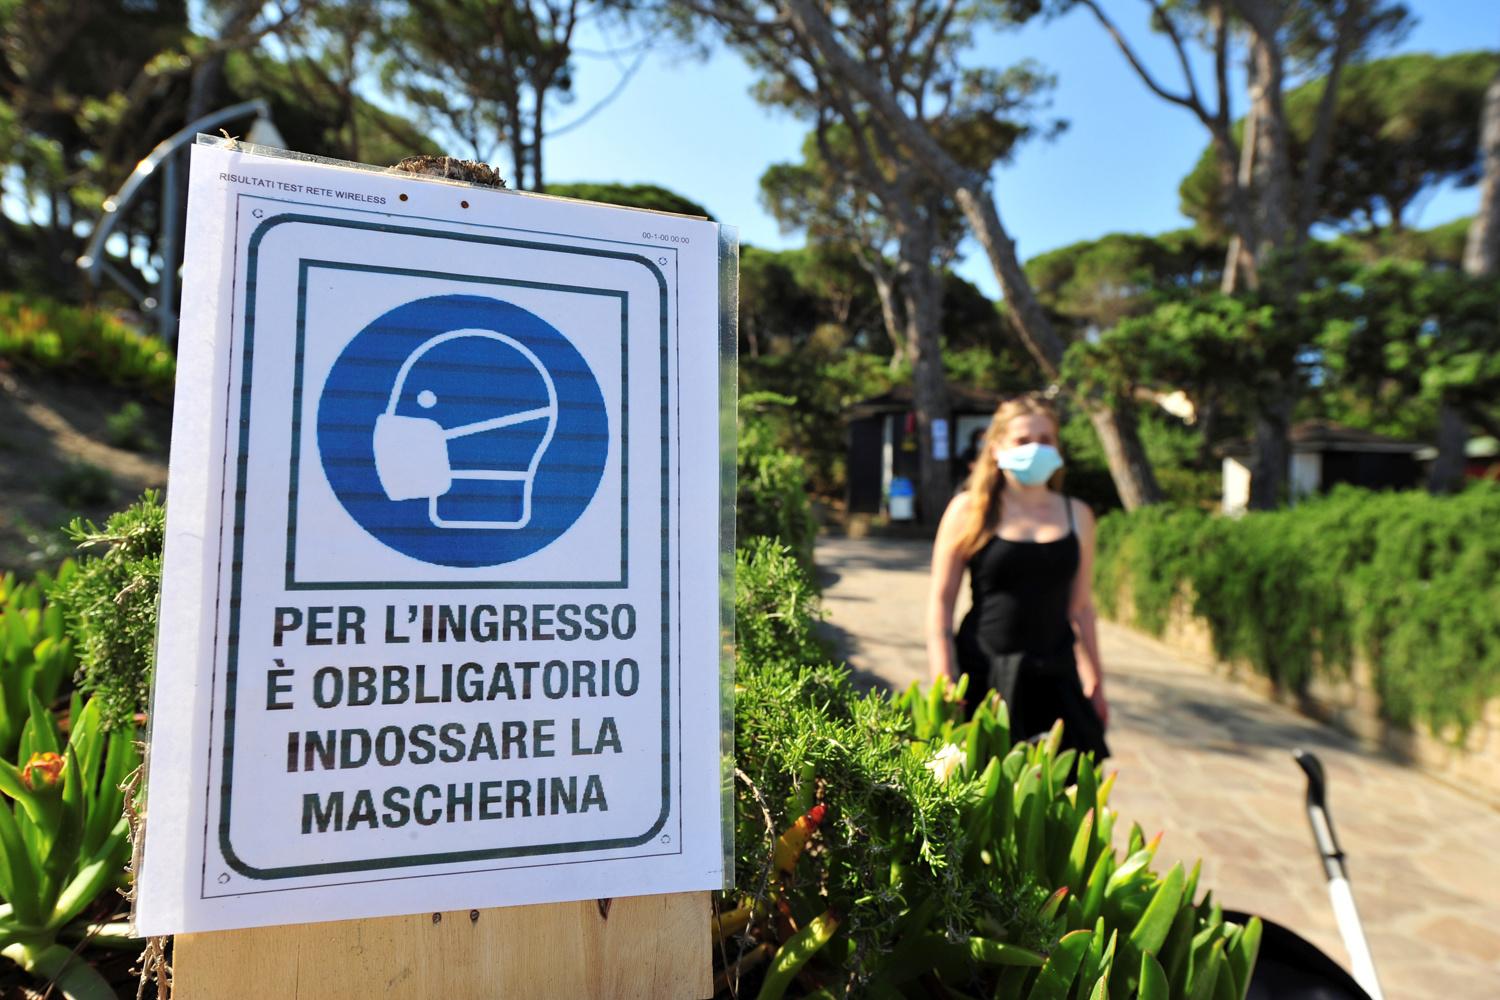 Masque de rigueur sur la plage de Punta Ala en Italie